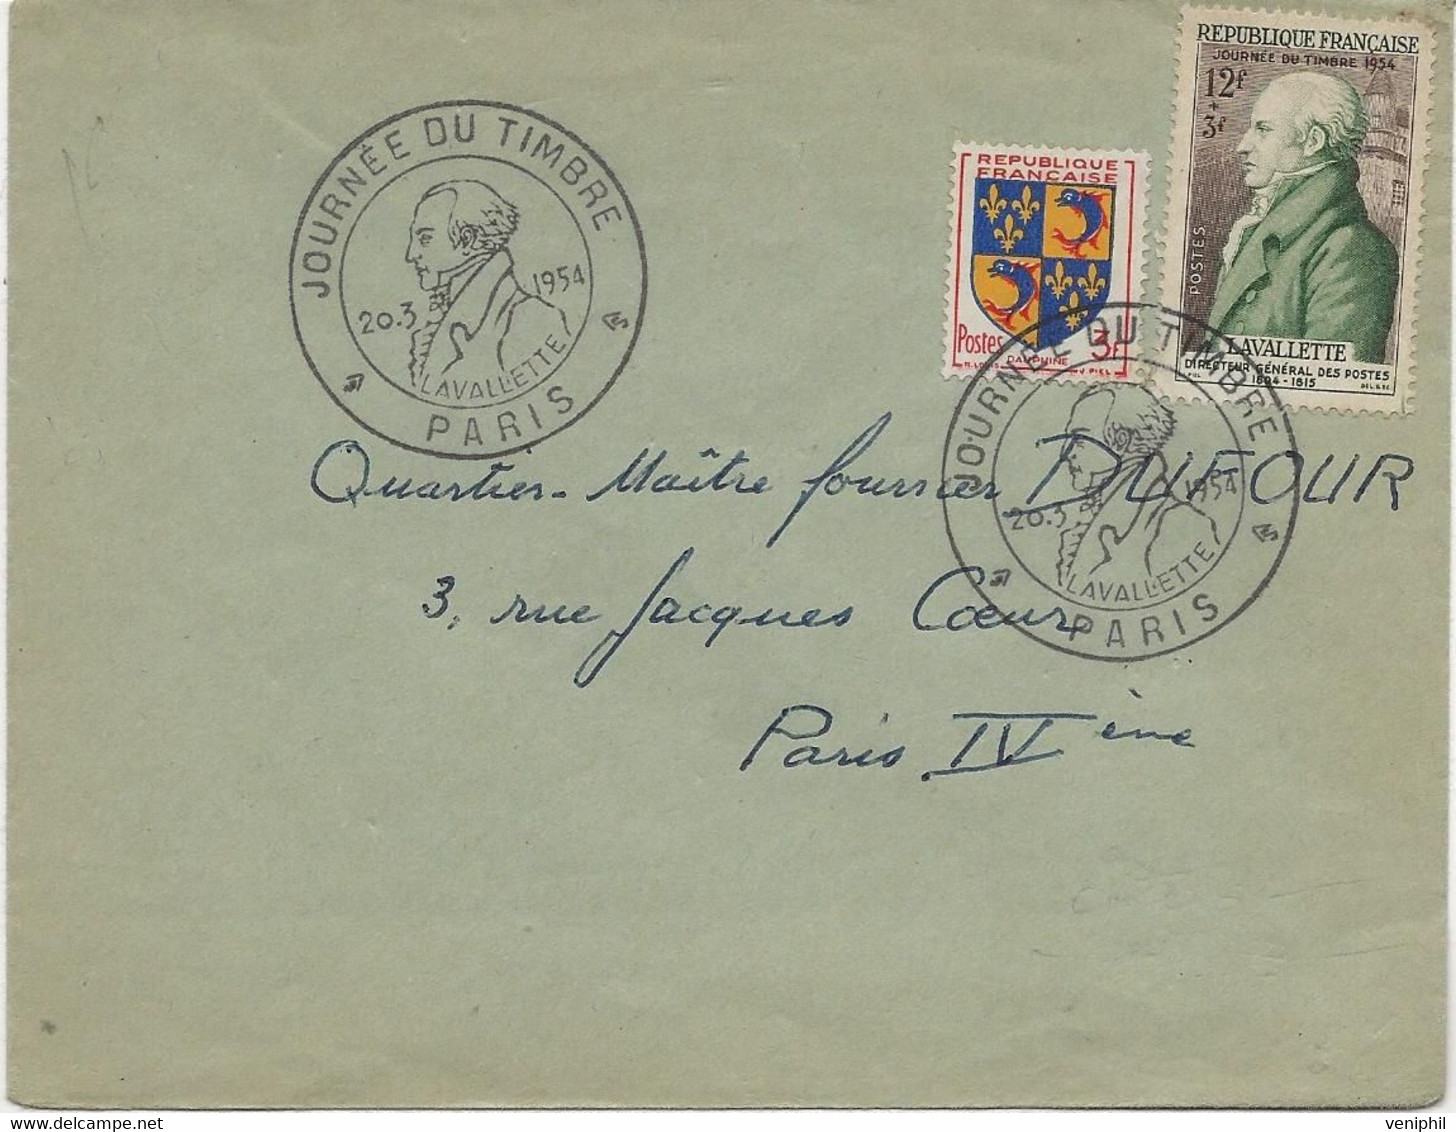 LETTRE AFFRANCHIE N° 954 + N° 969 - CACHET ILLUSTRE -JOURNEE DU TMBRE -PARIS -1954 - Gedenkstempels